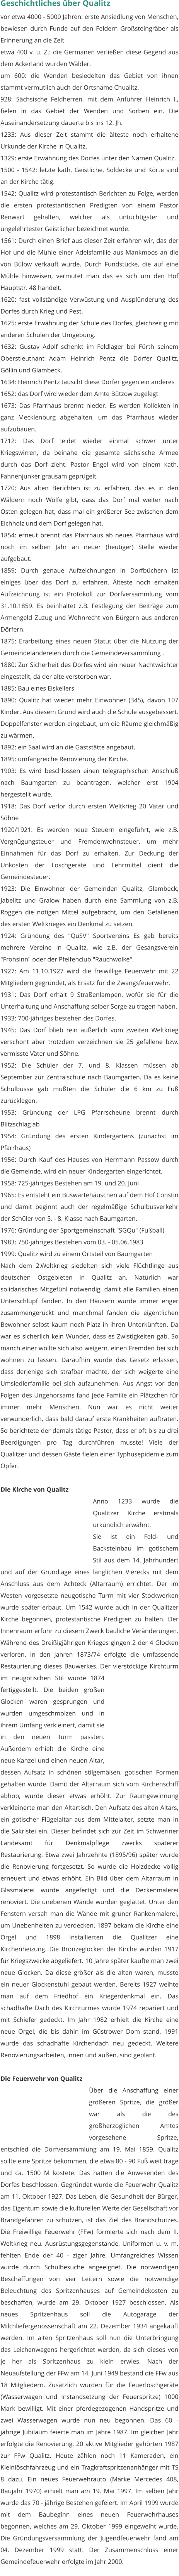 Geschichtliches über Qualitz vor etwa 4000 - 5000 Jahren: erste Ansiedlung von Menschen, bewiesen durch Funde auf den Feldern Großsteingräber als Erinnerung an die Zeit etwa 400 v. u. Z.: die Germanen verließen diese Gegend aus dem Ackerland wurden Wälder. um 600: die Wenden besiedelten das Gebiet von ihnen stammt vermutlich auch der Ortsname Chualitz. 928: Sächsische Feldherren, mit dem Anführer Heinrich I., fielen in das Gebiet der Wenden und Sorben ein. Die Auseinandersetzung dauerte bis ins 12. Jh. 1233: Aus dieser Zeit stammt die älteste noch erhaltene Urkunde der Kirche in Qualitz. 1329: erste Erwähnung des Dorfes unter den Namen Qualitz. 1500 - 1542: letzte kath. Geistliche, Soldecke und Körte sind an der Kirche tätig. 1542: Qualitz wird protestantisch Berichten zu Folge, werden die ersten protestantischen Predigten von einem Pastor Renwart gehalten, welcher als untüchtigster und ungelehrtester Geistlicher bezeichnet wurde. 1561: Durch einen Brief aus dieser Zeit erfahren wir, das der Hof und die Mühle einer Adelsfamilie aus Mankmoos an die von Bülow verkauft wurde. Durch Fundstücke, die auf eine Mühle hinweisen, vermutet man das es sich um den Hof Hauptstr. 48 handelt. 1620: fast vollständige Verwüstung und Ausplünderung des Dorfes durch Krieg und Pest. 1625: erste Erwähnung der Schule des Dorfes, gleichzeitig mit anderen Schulen der Umgebung. 1632: Gustav Adolf schenkt im Feldlager bei Fürth seinem Oberstleutnant Adam Heinrich Pentz die Dörfer Qualitz, Göllin und Glambeck. 1634: Heinrich Pentz tauscht diese Dörfer gegen ein anderes 1652: das Dorf wird wieder dem Amte Bützow zugelegt 1673: Das Pfarrhaus brennt nieder. Es werden Kollekten in ganz Mecklenburg abgehalten, um das Pfarrhaus wieder aufzubauen. 1712: Das Dorf leidet wieder einmal schwer unter Kriegswirren, da beinahe die gesamte sächsische Armee durch das Dorf zieht. Pastor Engel wird von einem kath. Fahnenjunker grausam geprügelt. 1720: Aus alten Berichten ist zu erfahren, das es in den Wäldern noch Wölfe gibt, dass das Dorf mal weiter nach Osten gelegen hat, dass mal ein größerer See zwischen dem Eichholz und dem Dorf gelegen hat. 1854: erneut brennt das Pfarrhaus ab neues Pfarrhaus wird noch im selben Jahr an neuer (heutiger) Stelle wieder aufgebaut. 1859: Durch genaue Aufzeichnungen in Dorfbüchern ist einiges über das Dorf zu erfahren. Älteste noch erhalten Aufzeichnung ist ein Protokoll zur Dorfversammlung vom 31.10.1859. Es beinhaltet z.B. Festlegung der Beiträge zum Armengeld Zuzug und Wohnrecht von Bürgern aus anderen Dörfern. 1875: Erarbeitung eines neuen Statut über die Nutzung der Gemeindeländereien durch die Gemeindeversammlung . 1880: Zur Sicherheit des Dorfes wird ein neuer Nachtwächter eingestellt, da der alte verstorben war. 1885: Bau eines Eiskellers 1890: Qualitz hat wieder mehr Einwohner (345), davon 107 Kinder. Aus diesem Grund wird auch die Schule ausgebessert. Doppelfenster werden eingebaut, um die Räume gleichmäßig zu wärmen. 1892: ein Saal wird an die Gaststätte angebaut. 1895: umfangreiche Renovierung der Kirche. 1903: Es wird beschlossen einen telegraphischen Anschluß nach Baumgarten zu beantragen, welcher erst 1904 hergestellt wurde. 1918: Das Dorf verlor durch ersten Weltkrieg 20 Väter und Söhne 1920/1921: Es werden neue Steuern eingeführt, wie z.B. Vergnügungsteuer und Fremdenwohnsteuer, um mehr Einnahmen für das Dorf zu erhalten. Zur Deckung der Unkosten der Löschgeräte und Lehrmittel dient die Gemeindesteuer. 1923: Die Einwohner der Gemeinden Qualitz, Glambeck, Jabelitz und Gralow haben durch eine Sammlung von z.B. Roggen die nötigen Mittel aufgebracht, um den Gefallenen des ersten Weltkrieges ein Denkmal zu setzen. 1924: Gründung des "QuSV" Sportvereins Es gab bereits mehrere Vereine in Qualitz, wie z.B. der Gesangsverein "Frohsinn" oder der Pfeifenclub "Rauchwolke". 1927: Am 11.10.1927 wird die freiwillige Feuerwehr mit 22 Mitgliedern gegründet, als Ersatz für die Zwangsfeuerwehr. 1931: Das Dorf erhält 9 Straßenlampen, wofür sie für die Unterhaltung und Anschaffung selber Sorge zu tragen haben. 1933: 700-jähriges bestehen des Dorfes. 1945: Das Dorf blieb rein äußerlich vom zweiten Weltkrieg verschont aber trotzdem verzeichnen sie 25 gefallene bzw. vermisste Väter und Söhne. 1952: Die Schüler der 7. und 8. Klassen müssen ab September zur Zentralschule nach Baumgarten. Da es keine Schulbusse gab mußten die Schüler die 6 km zu Fuß zurücklegen. 1953: Gründung der LPG Pfarrscheune brennt durch Blitzschlag ab 1954: Gründung des ersten Kindergartens (zunächst im Pfarrhaus) 1956: Durch Kauf des Hauses von Herrmann Passow durch die Gemeinde, wird ein neuer Kindergarten eingerichtet. 1958: 725-jähriges Bestehen am 19. und 20. Juni 1965: Es entsteht ein Buswartehäuschen auf dem Hof Constin und damit beginnt auch der regelmäßige Schulbusverkehr der Schüler von 5. - 8. Klasse nach Baumgarten. 1976: Gründung der Sportgemeinschaft "SGQu" (Fußball) 1983: 750-jähriges Bestehen vom 03. - 05.06.1983 1999: Qualitz wird zu einem Ortsteil von Baumgarten Nach dem 2.Weltkrieg siedelten sich viele Flüchtlinge aus deutschen Ostgebieten in Qualitz an. Natürlich war solidarisches Mitgefühl notwendig, damit alle Familien einen Unterschlupf fanden. In den Häusern wurde immer enger zusammengerückt und manchmal fanden die eigentlichen Bewohner selbst kaum noch Platz in ihren Unterkünften. Da war es sicherlich kein Wunder, dass es Zwistigkeiten gab. So manch einer wollte sich also weigern, einen Fremden bei sich wohnen zu lassen. Daraufhin wurde das Gesetz erlassen, dass derjenige sich strafbar machte, der sich weigerte eine Umsiedlerfamilie bei sich aufzunehmen. Aus Angst vor den Folgen des Ungehorsams fand jede Familie ein Plätzchen für immer mehr Menschen. Nun war es nicht weiter verwunderlich, dass bald darauf erste Krankheiten auftraten. So berichtete der damals tätige Pastor, dass er oft bis zu drei Beerdigungen pro Tag durchführen musste! Viele der Qualitzer und dessen Gäste fielen einer Typhusepidemie zum Opfer.   Die Kirche von Qualitz Anno 1233 wurde die Qualitzer Kirche erstmals urkundlich erwähnt. Sie ist ein Feld- und Backsteinbau im gotischem Stil aus dem 14. Jahrhundert und auf der Grundlage eines länglichen Vierecks mit dem Anschluss aus dem Achteck (Altarraum) errichtet. Der im Westen vorgesetzte neugotische Turm mit vier Stockwerken wurde später erbaut. Um 1542 wurde auch in der Qualitzer Kirche begonnen, protestantische Predigten zu halten. Der Innenraum erfuhr zu diesem Zweck bauliche Veränderungen. Während des Dreißigjährigen Krieges gingen 2 der 4 Glocken verloren. In den Jahren 1873/74 erfolgte die umfassende Restaurierung dieses Bauwerkes. Der vierstöckige Kirchturm im neugotischen Stil wurde 1874 fertiggestellt. Die beiden großen Glocken waren gesprungen und wurden umgeschmolzen und in ihrem Umfang verkleinert, damit sie in den neuen Turm passten. Außerdem erhielt die Kirche eine neue Kanzel und einen neuen Altar, dessen Aufsatz in schönen stilgemäßen, gotischen Formen gehalten wurde. Damit der Altarraum sich vom Kirchenschiff abhob, wurde dieser etwas erhöht. Zur Raumgewinnung verkleinerte man den Altartisch. Den Aufsatz des alten Altars, ein gotischer Flügelaltar aus dem Mittelalter, setzte man in die Sakristei ein. Dieser befindet sich zur Zeit im Schweriner Landesamt für Denkmalpflege zwecks späterer Restaurierung. Etwa zwei Jahrzehnte (1895/96) später wurde die Renovierung fortgesetzt. So wurde die Holzdecke völlig erneuert und etwas erhöht. Ein Bild über dem Altarraum in Glasmalerei wurde angefertigt und die Deckenmalerei renoviert. Die unebenen Wände wurden geglättet. Unter den Fenstern versah man die Wände mit grüner Rankenmalerei, um Unebenheiten zu verdecken. 1897 bekam die Kirche eine Orgel und 1898 installierten die Qualitzer eine Kirchenheizung. Die Bronzeglocken der Kirche wurden 1917 für Kriegszwecke abgeliefert. 10 Jahre später kaufte man zwei neue Glocken. Da diese größer als die alten waren, musste ein neuer Glockenstuhl gebaut werden. Bereits 1927 weihte man auf dem Friedhof ein Kriegerdenkmal ein. Das schadhafte Dach des Kirchturmes wurde 1974 repariert und mit Schiefer gedeckt. Im Jahr 1982 erhielt die Kirche eine neue Orgel, die bis dahin im Güstrower Dom stand. 1991 wurde das schadhafte Kirchendach neu gedeckt. Weitere Renovierungsarbeiten, innen und außen, sind geplant.   Die Feuerwehr von Qualitz Über die Anschaffung einer größeren Spritze, die größer war als die des großherzoglichen Amtes vorgesehene Spritze, entschied die Dorfversammlung am 19. Mai 1859. Qualitz sollte eine Spritze bekommen, die etwa 80 - 90 Fuß weit trage und ca. 1500 M kostete. Das hatten die Anwesenden des Dorfes beschlossen. Gegründet wurde die Feuerwehr Qualitz am 11. Oktober 1927. Das Leben, die Gesundheit der Bürger, das Eigentum sowie die kulturellen Werte der Gesellschaft vor Brandgefahren zu schützen, ist das Ziel des Brandschutzes. Die Freiwillige Feuerwehr (FFw) formierte sich nach dem II. Weltkrieg neu. Ausrüstungsgegenstände, Uniformen u. v. m. fehlten Ende der 40 - ziger Jahre. Umfangreiches Wissen wurde durch Schulbesuche angeeignet. Die notwendigen Beschaffungen von vier Leitern sowie die notwendige Beleuchtung des Spritzenhauses auf Gemeindekosten zu beschaffen, wurde am 29. Oktober 1927 beschlossen. Als neues Spritzenhaus soll die Autogarage der Milchliefergenossenschaft am 22. Dezember 1934 angekauft werden. Im alten Spritzenhaus soll nun die Unterbringung des Leichenwagens hergerichtet werden, da sich dieses von je her als Spritzenhaus zu klein erwies. Nach der Neuaufstellung der FFw am 14. Juni 1949 bestand die FFw aus 18 Mitgliedern. Zusätzlich wurden für die Feuerlöschgeräte (Wasserwagen und Instandsetzung der Feuerspritze) 1000 Mark bewilligt. Mit einer pferdegezogenen Handspritze und zwei Wasserwagen wurde nun neu begonnen. Das 60 - jährige Jubiläum feierte man im Jahre 1987. Im gleichen Jahr erfolgte die Renovierung. 20 aktive Mitglieder gehörten 1987 zur FFw Qualitz. Heute zählen noch 11 Kameraden, ein Kleinlöschfahrzeug und ein Tragkraftspritzenanhänger mit TS 8 dazu. Ein neues Feuerwehrauto (Marke Mercedes 408, Baujahr 1970) erhielt man am 19. Mai 1997. Im selben Jahr wurde das 70 - jährige Bestehen gefeiert. Im April 1999 wurde mit dem Baubeginn eines neuen Feuerwehrhauses begonnen, welches am 29. Oktober 1999 eingeweiht wurde. Die Gründungsversammlung der Jugendfeuerwehr fand am 04. Dezember 1999 statt. Der Zusammenschluss einer Gemeindefeuerwehr erfolgte im Jahr 2000.